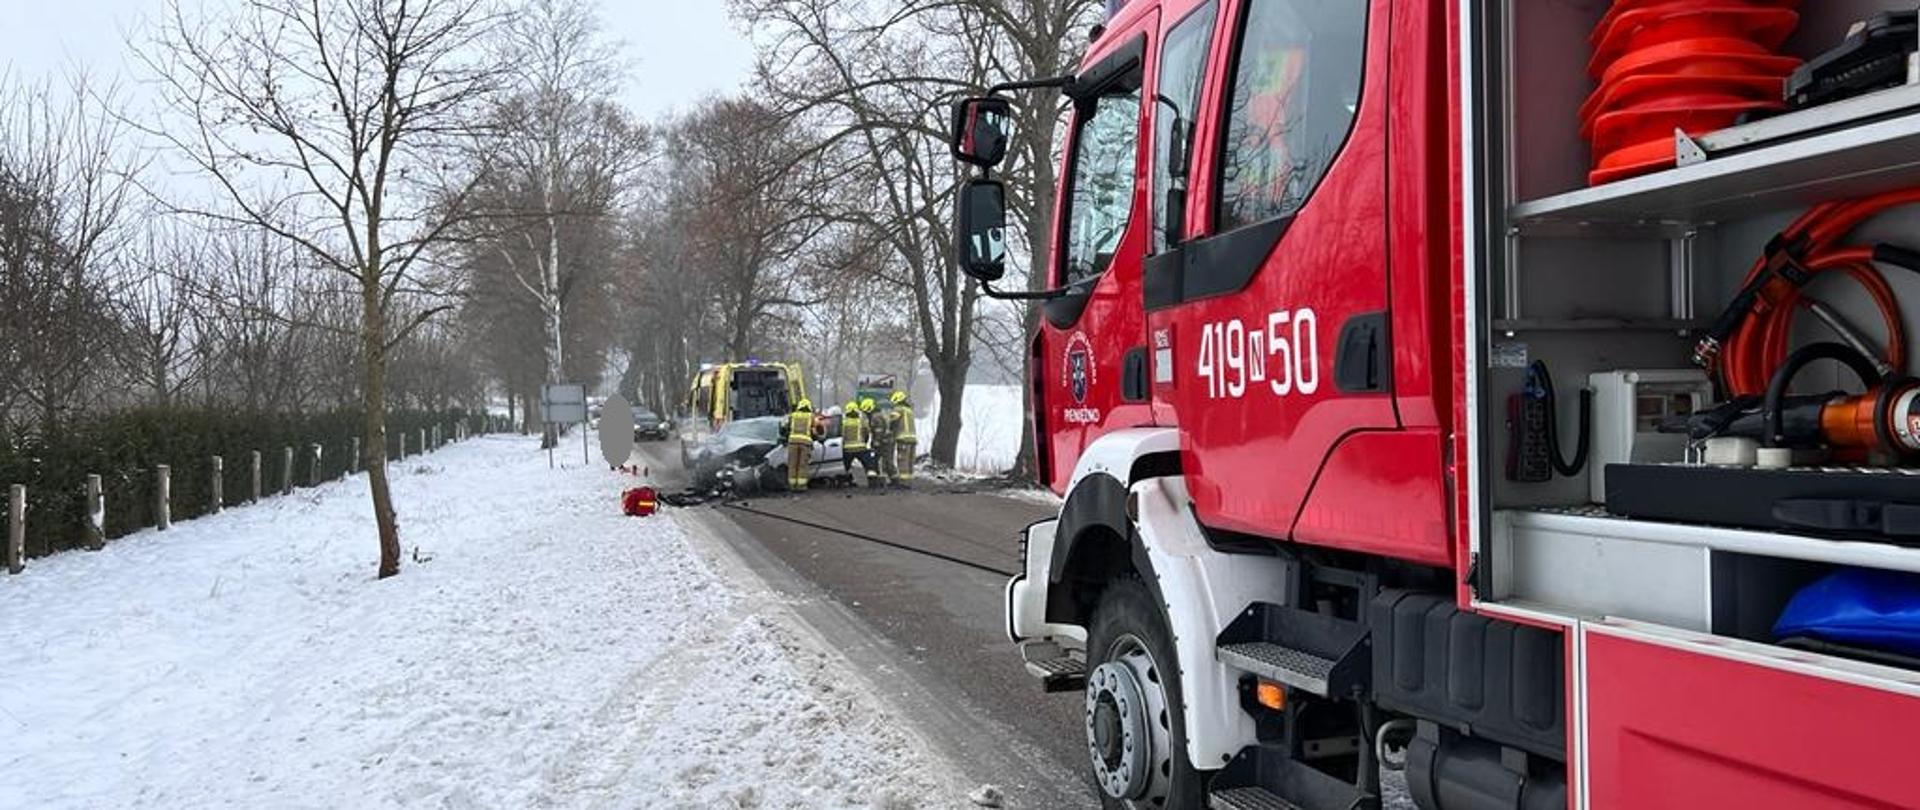 Zima. Na zdjęciu z prawej strony duży czerwony samochód strażacki stoi na drodze. W oddali na drodze rozbite auto i przy nim strażacy. Pobocza białe do śniegu.